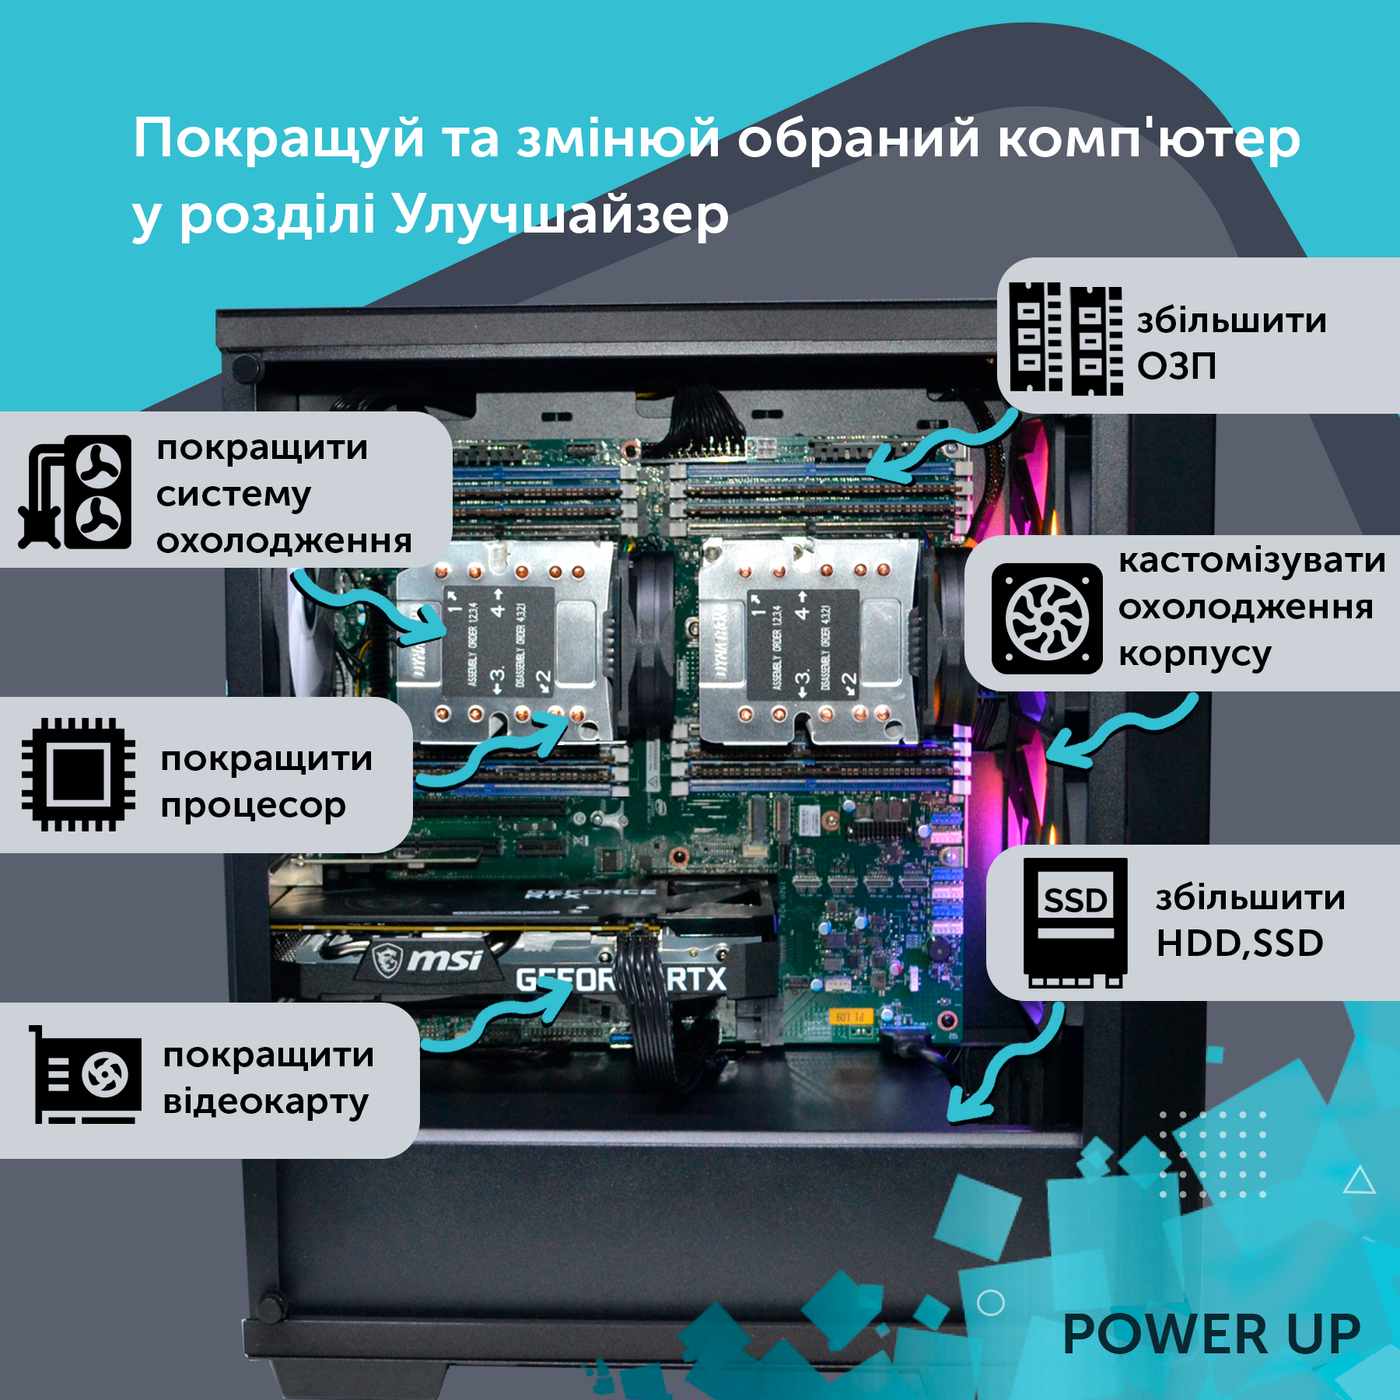 Робоча станція PowerUp Desktop #217 Core i7 13700K/32 GB/SSD 1TB/NVIDIA Quadro M4000 8GB